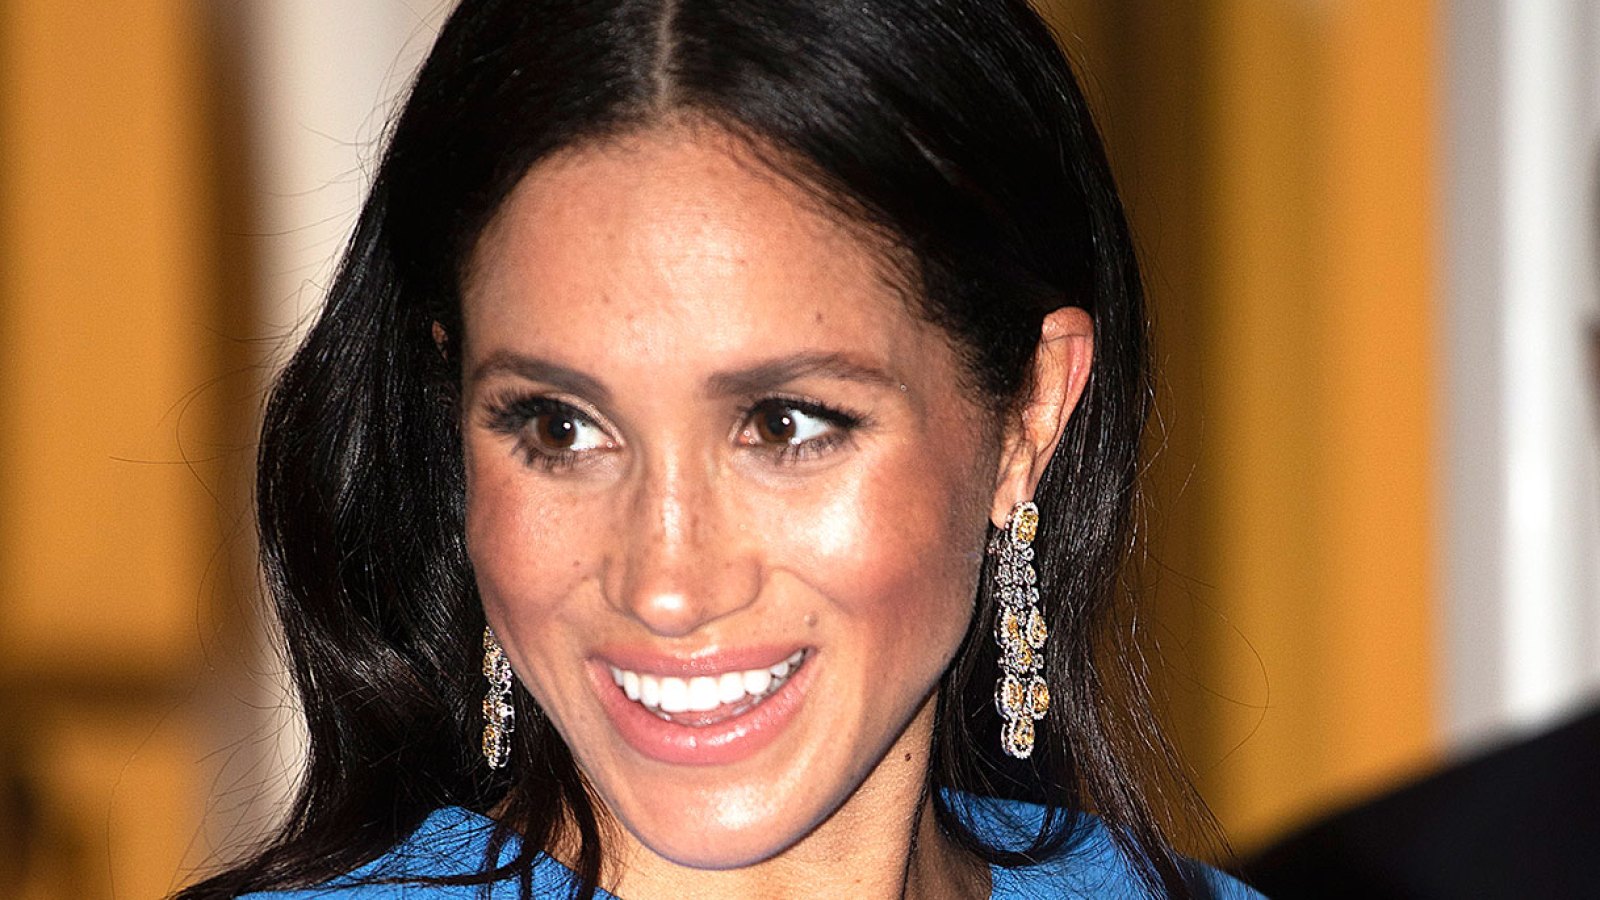 Megan Markle's Borrowed Diamond Earrings are Worth Over $650,000